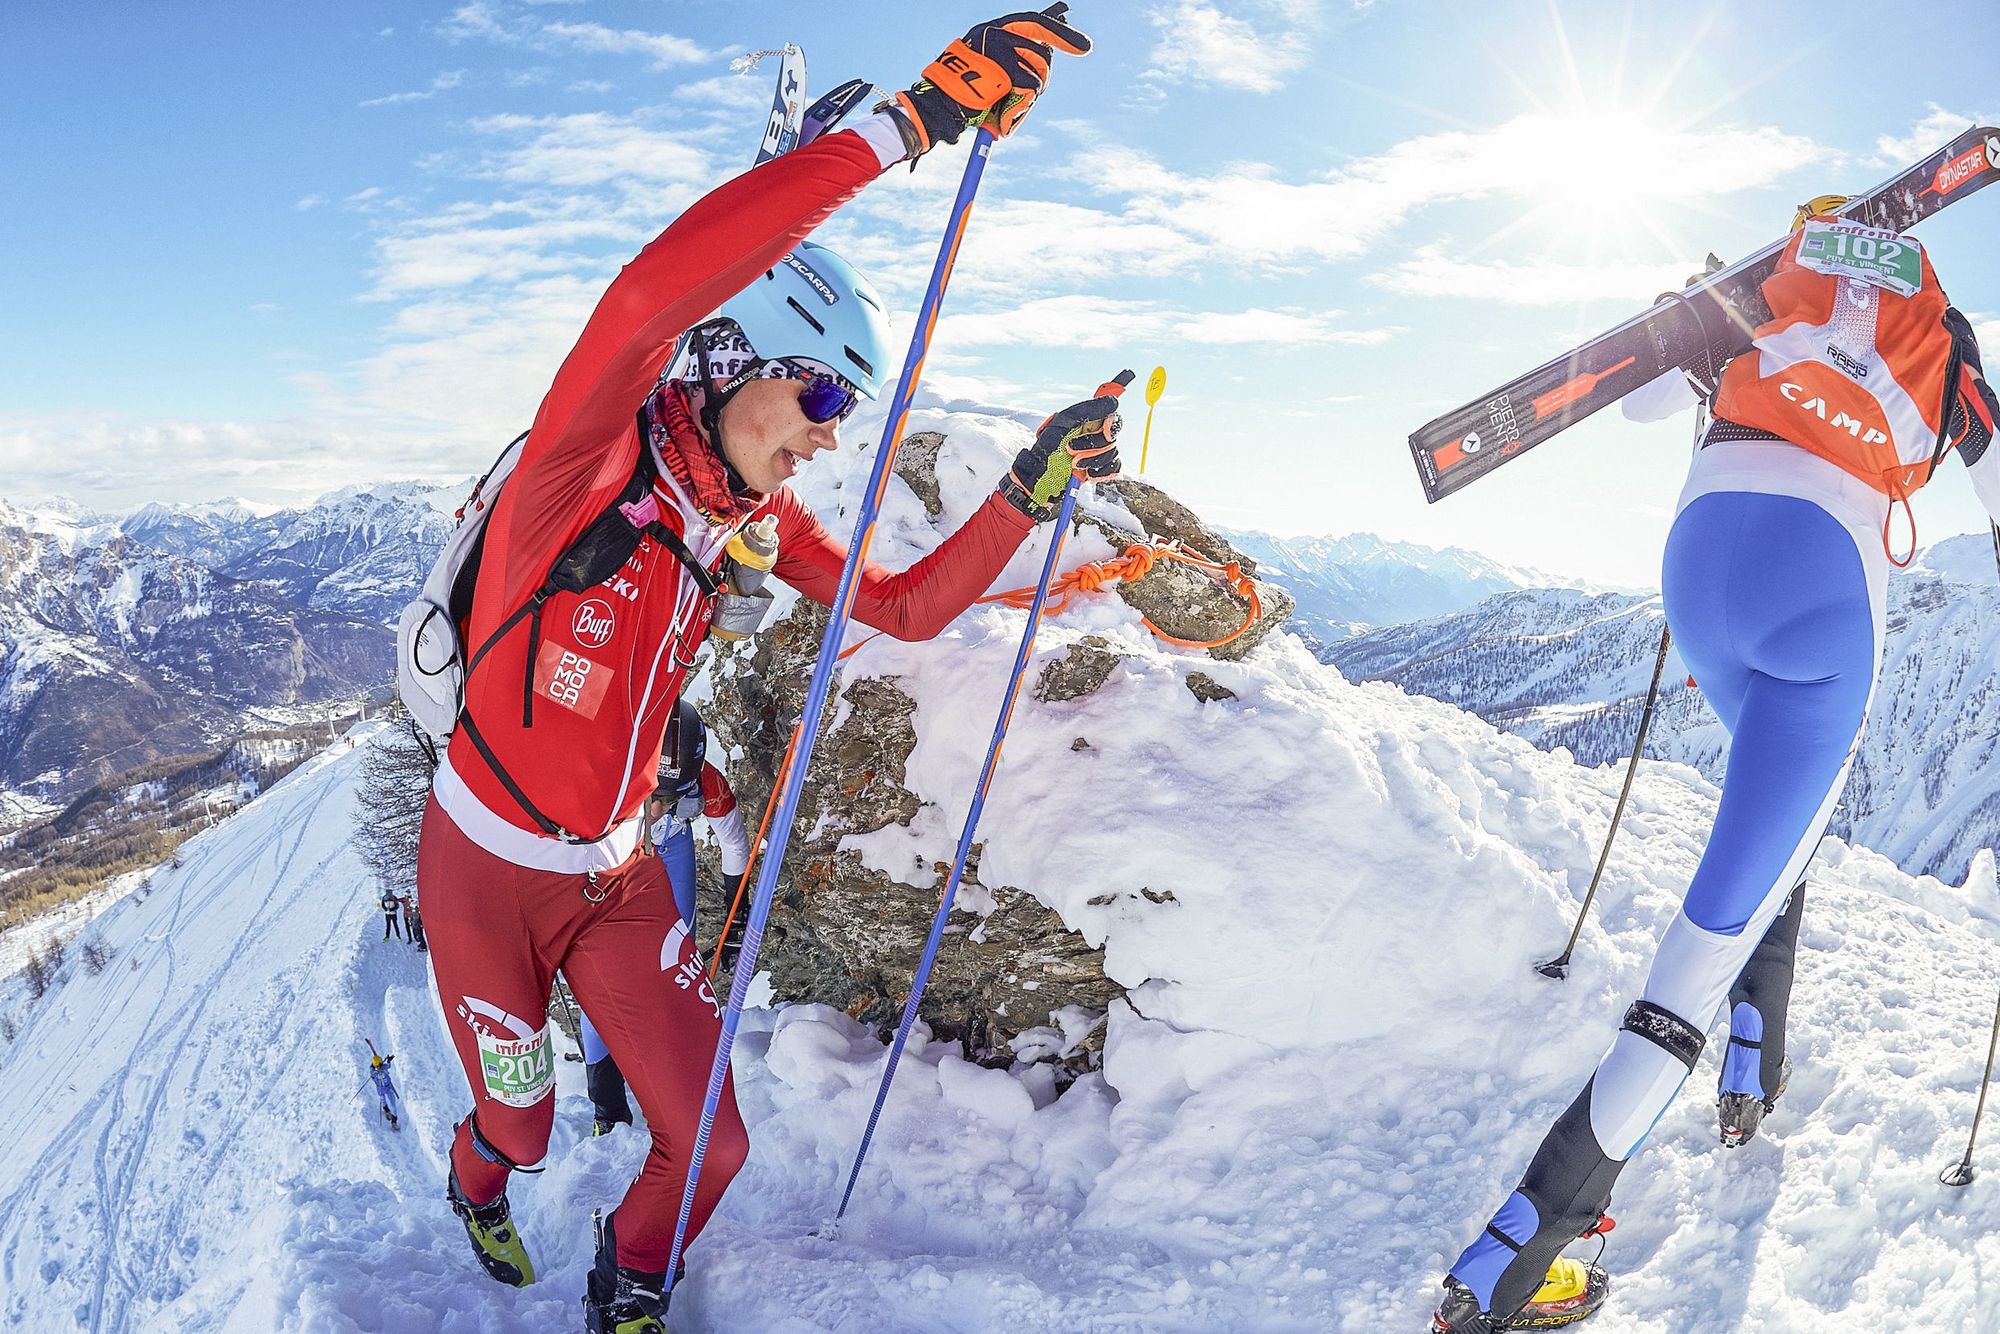 Les championnats suisses de ski alpinisme se courront finalement à Morgins ce week-end